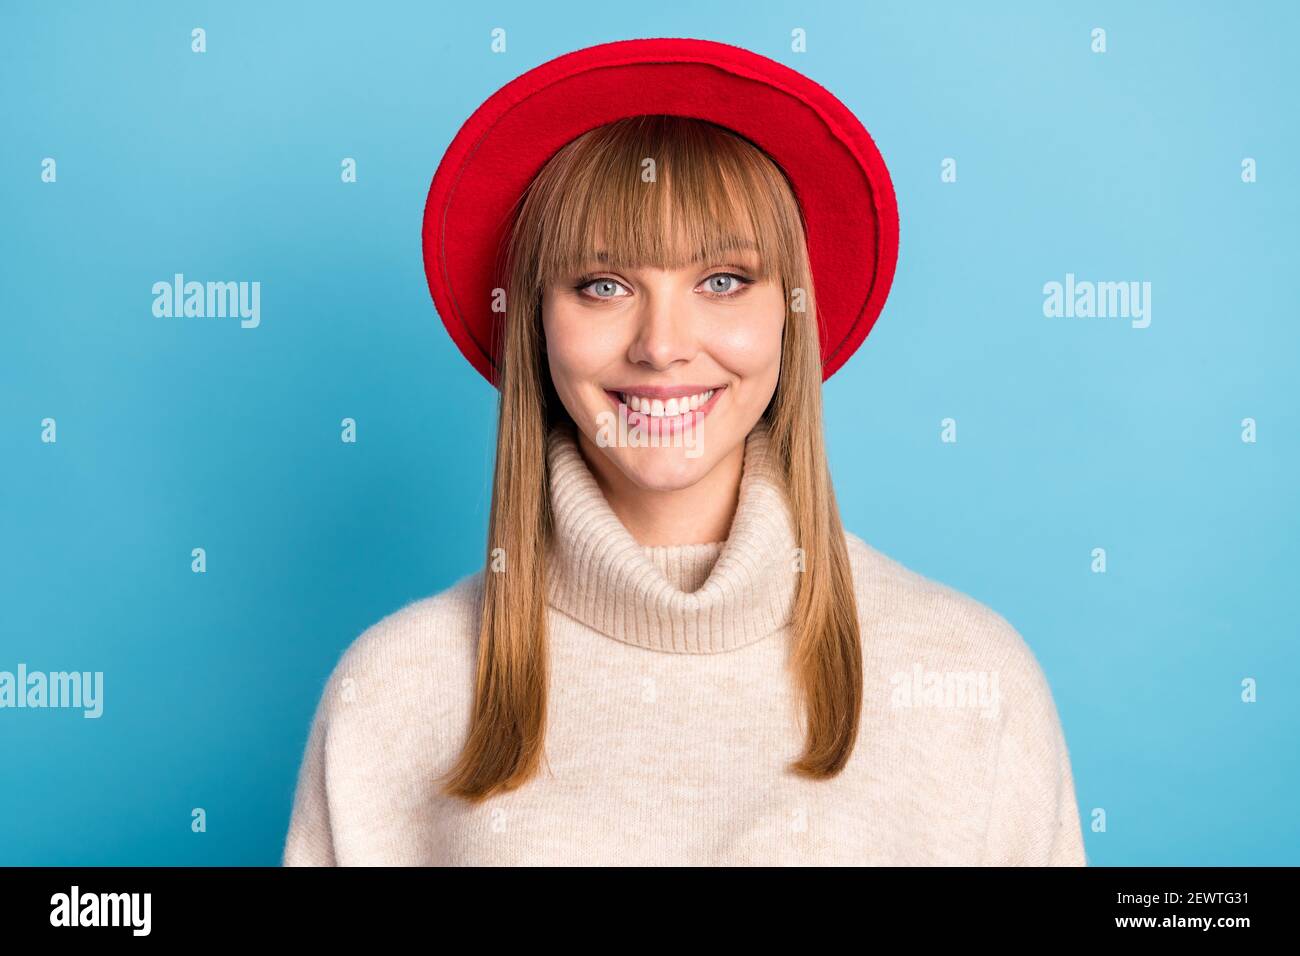 Portrait Foto Mädchen tragen beige Rollkragen roten Hut lächelnd glücklich Isolierter heller blauer Hintergrund Stockfoto